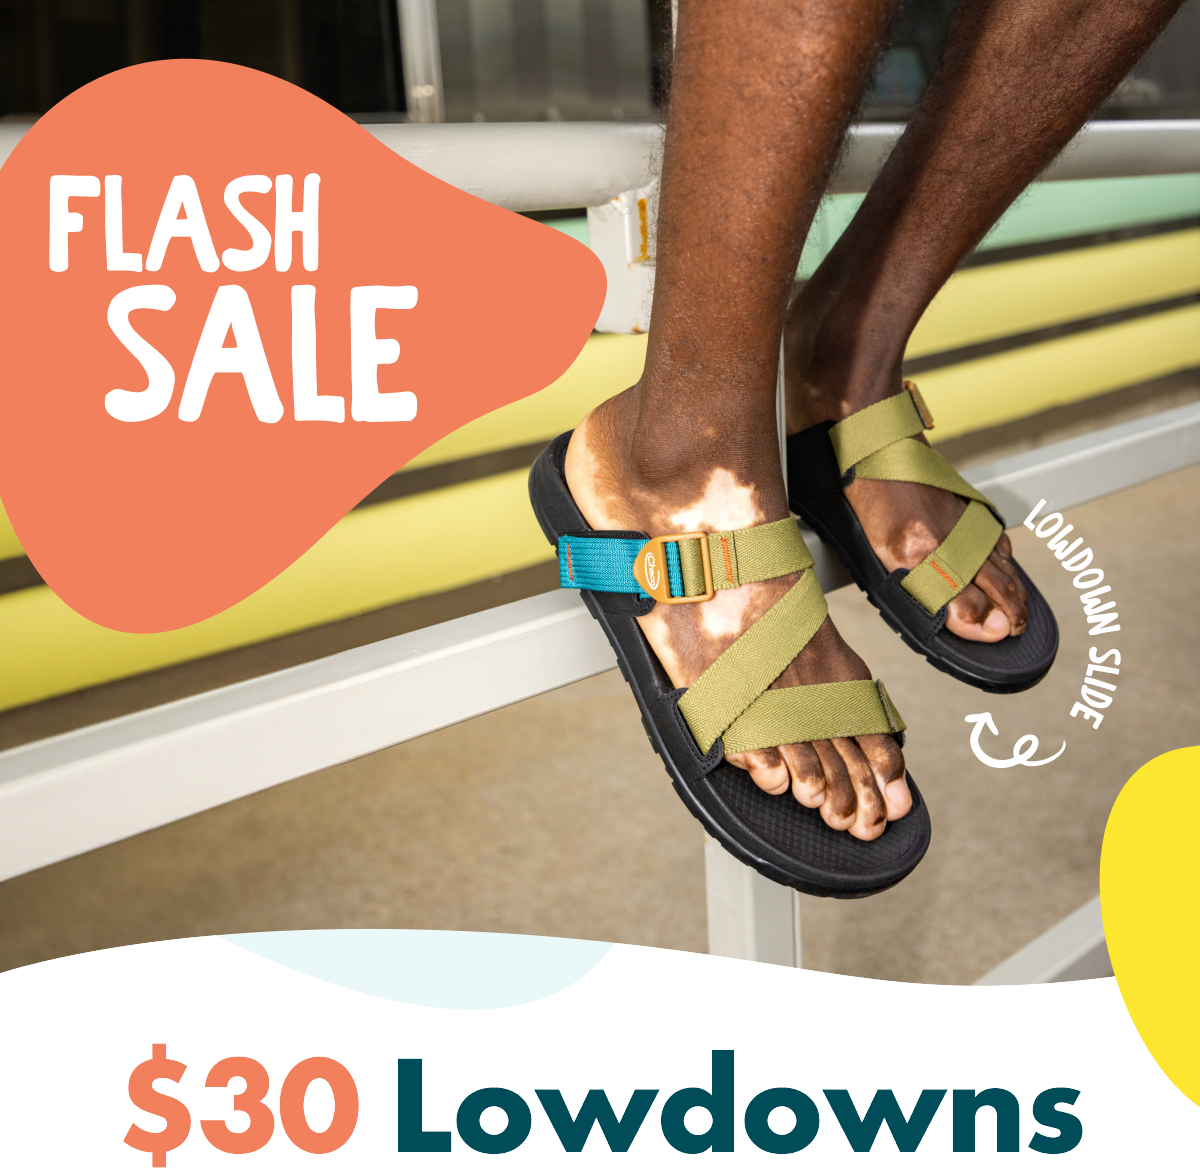 FLASH SALE - LOWDOWN SLIDE - \\$30 Lowdowns